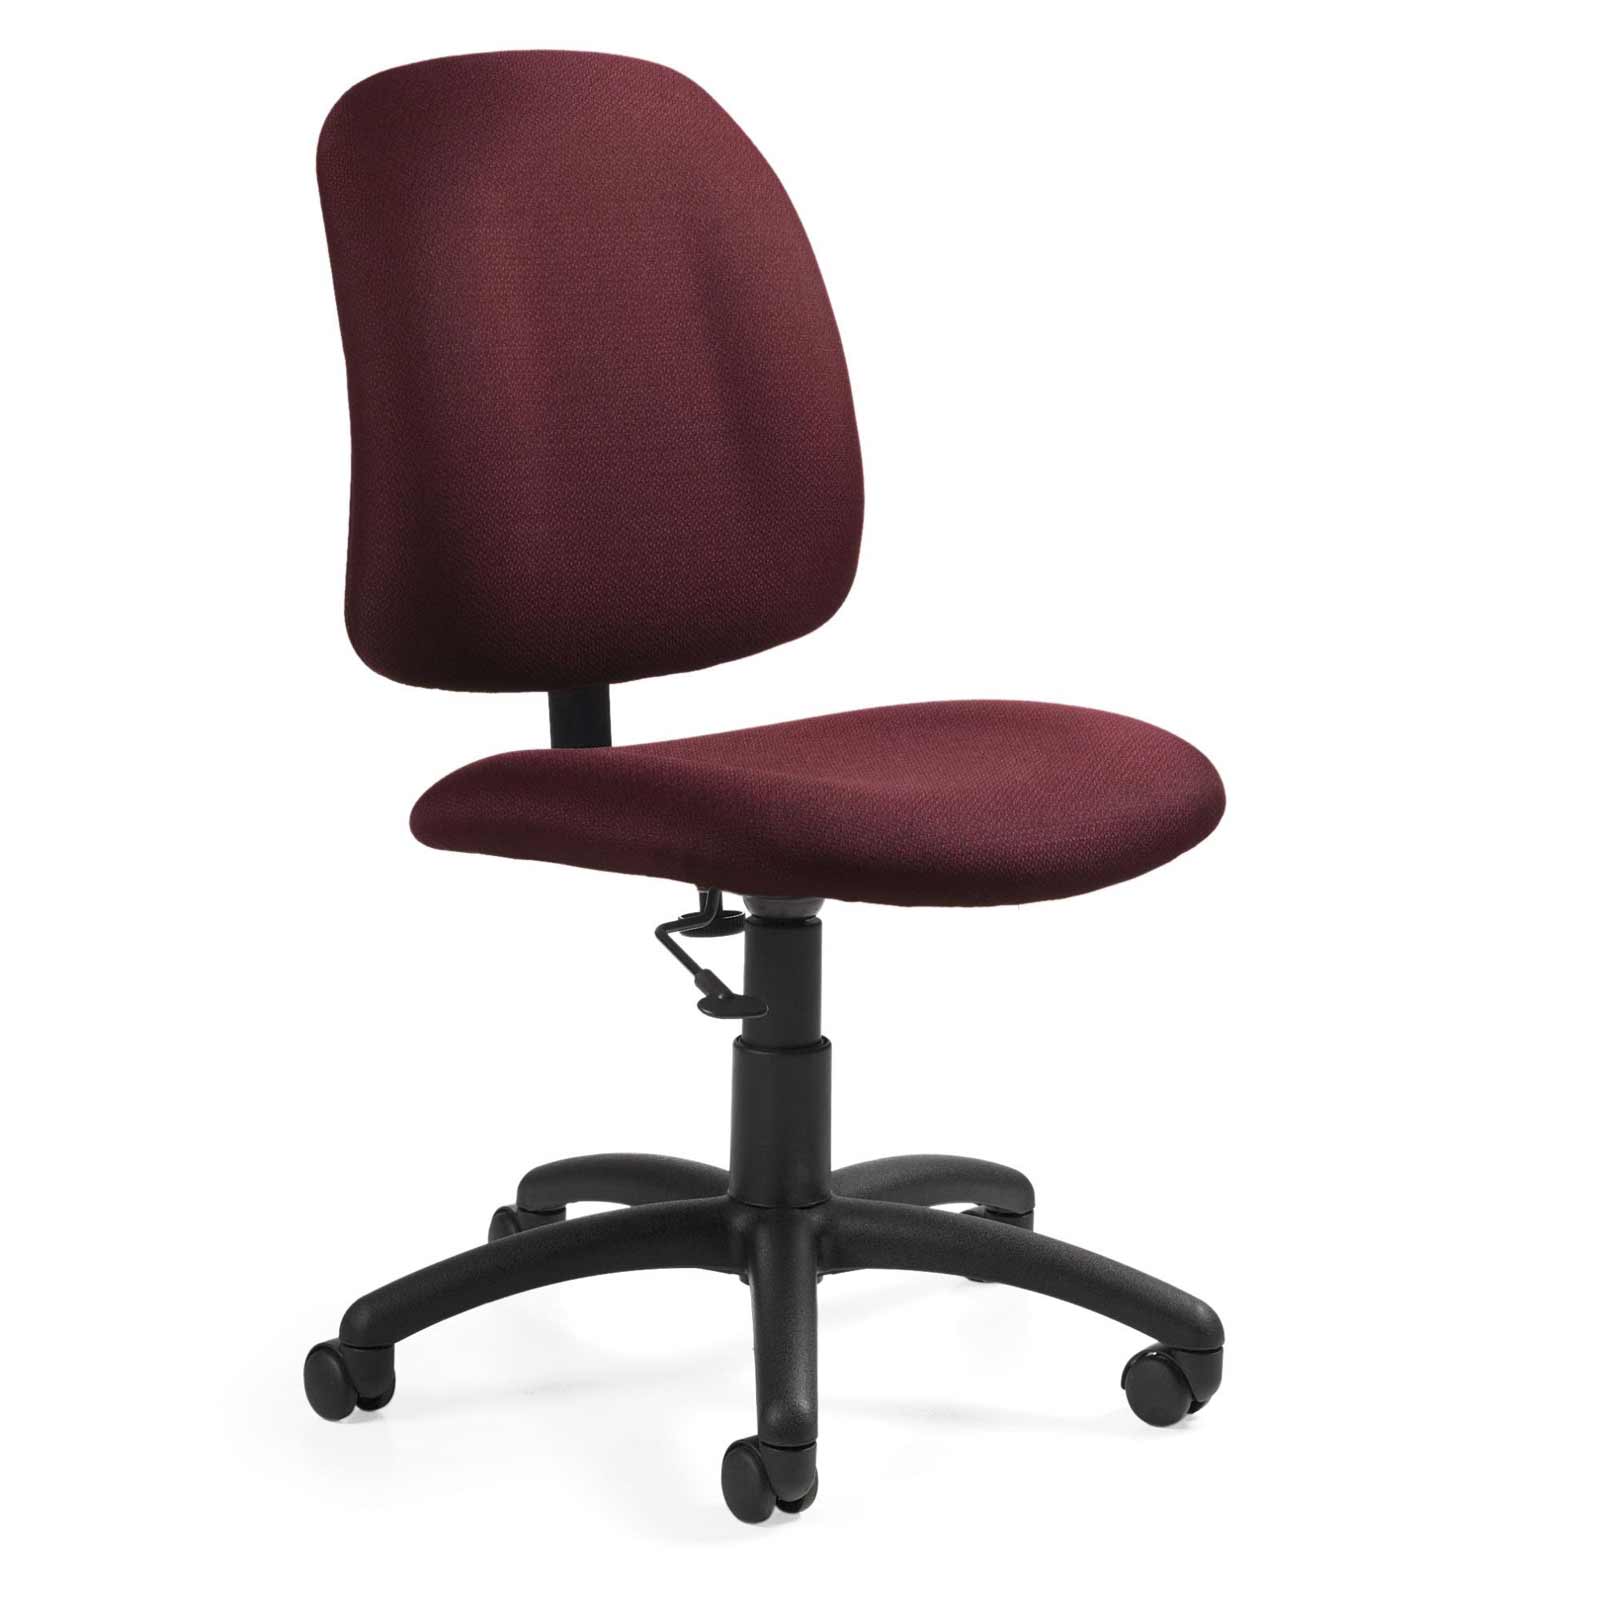 armless desk chair